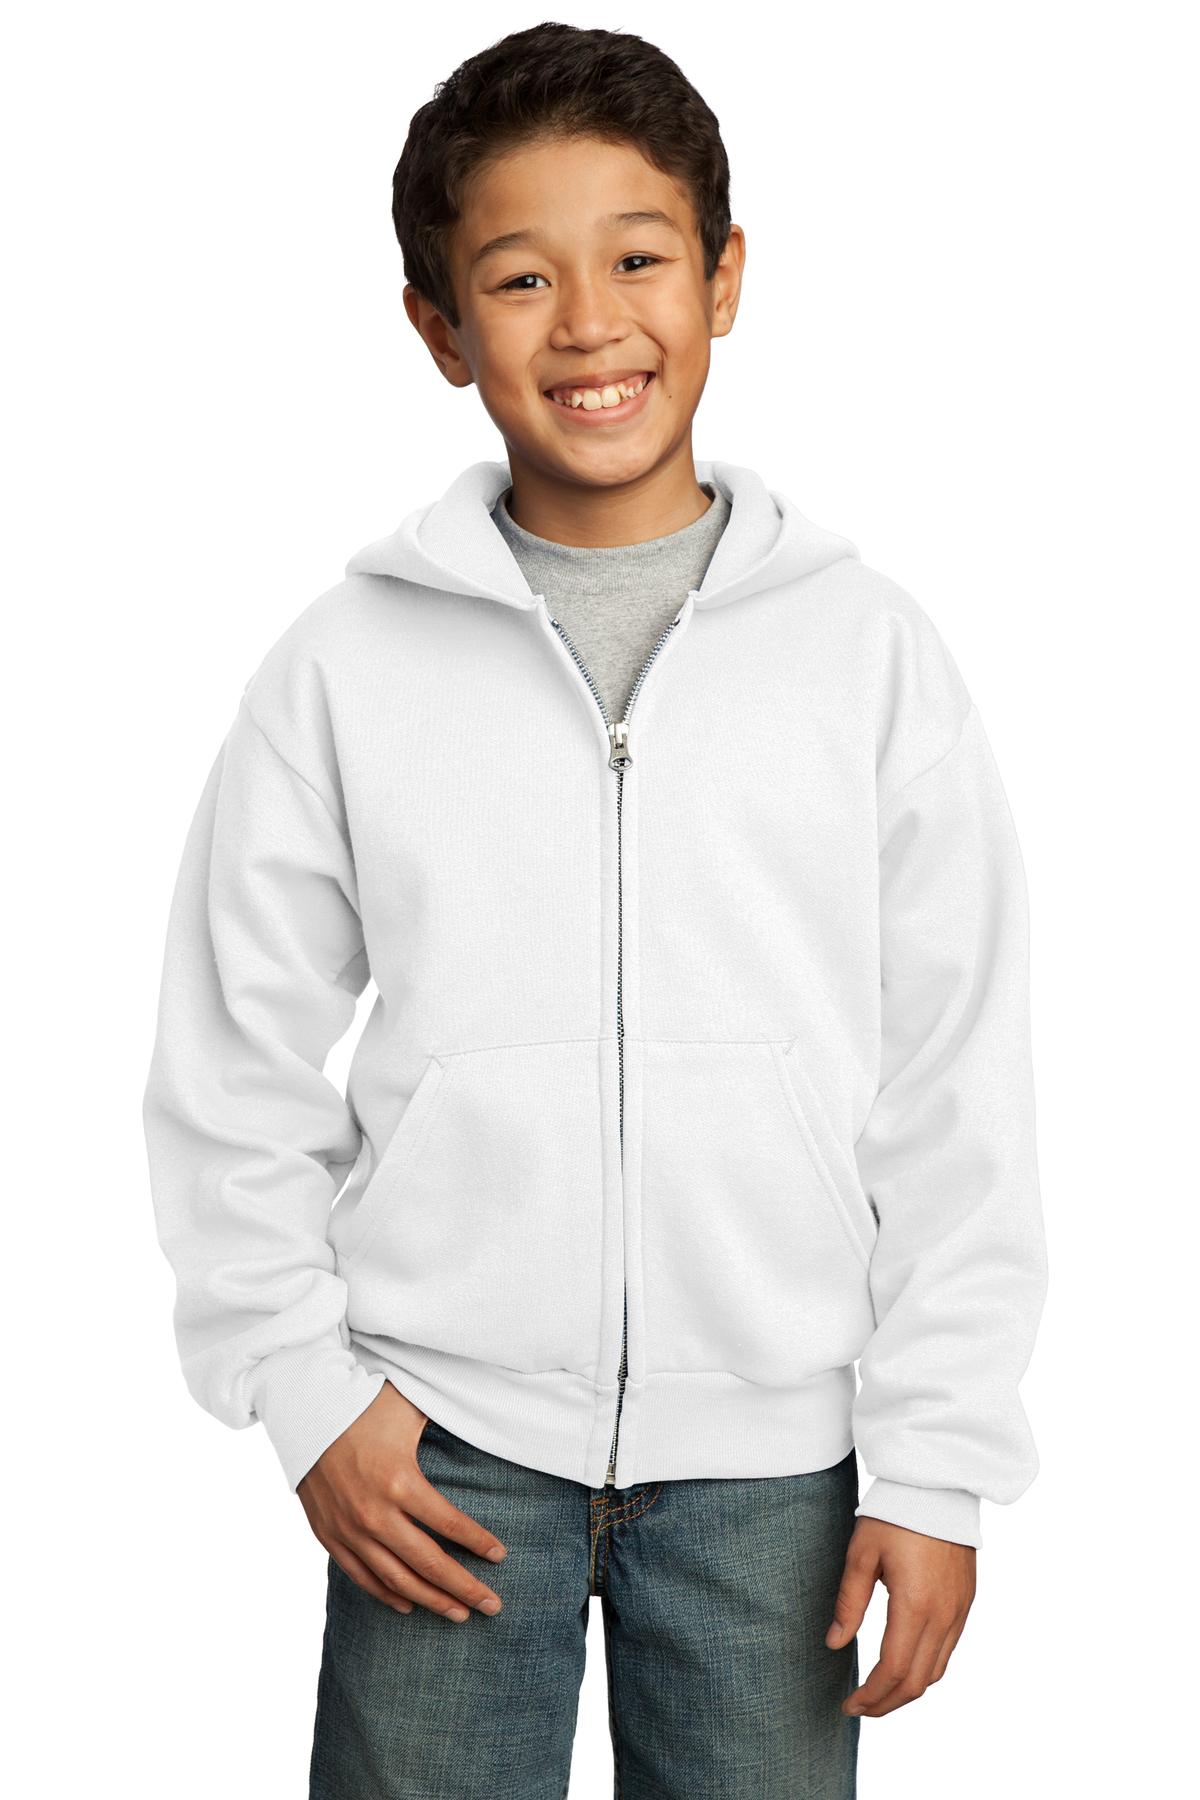 Port & Company Youth Sweatshirts & Fleece for Hospitality ® - Youth Core Fleece Full-Zip Hooded Sweatshirt.-Port & Company